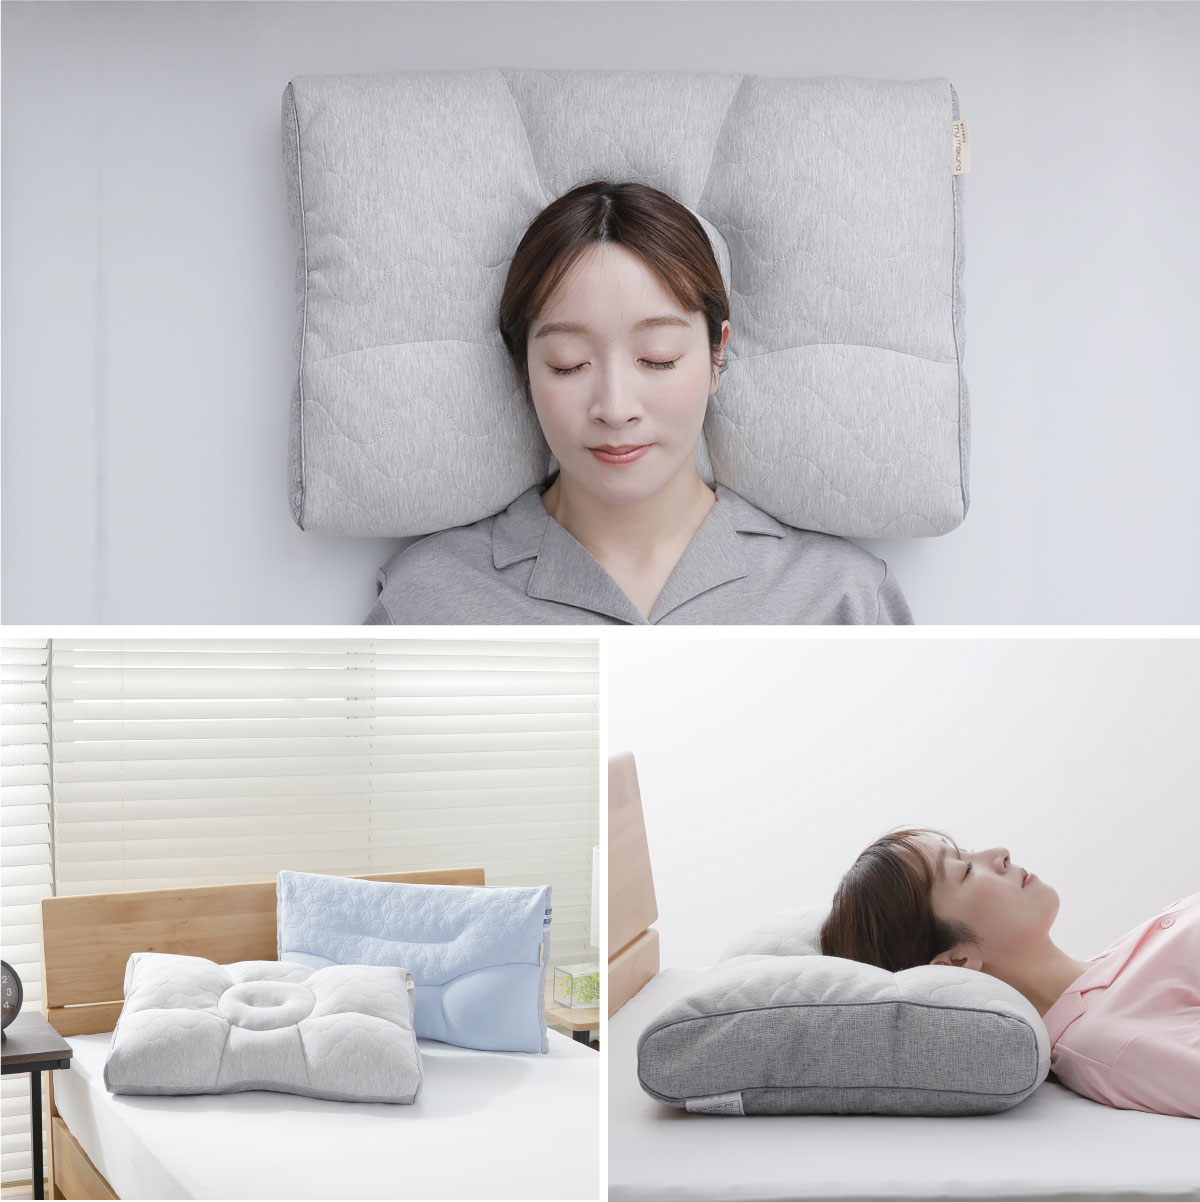 首肩楽寝枕DX グレー (40×58×8cm） 横向き枕 仰向け 横向き寝 頸椎 